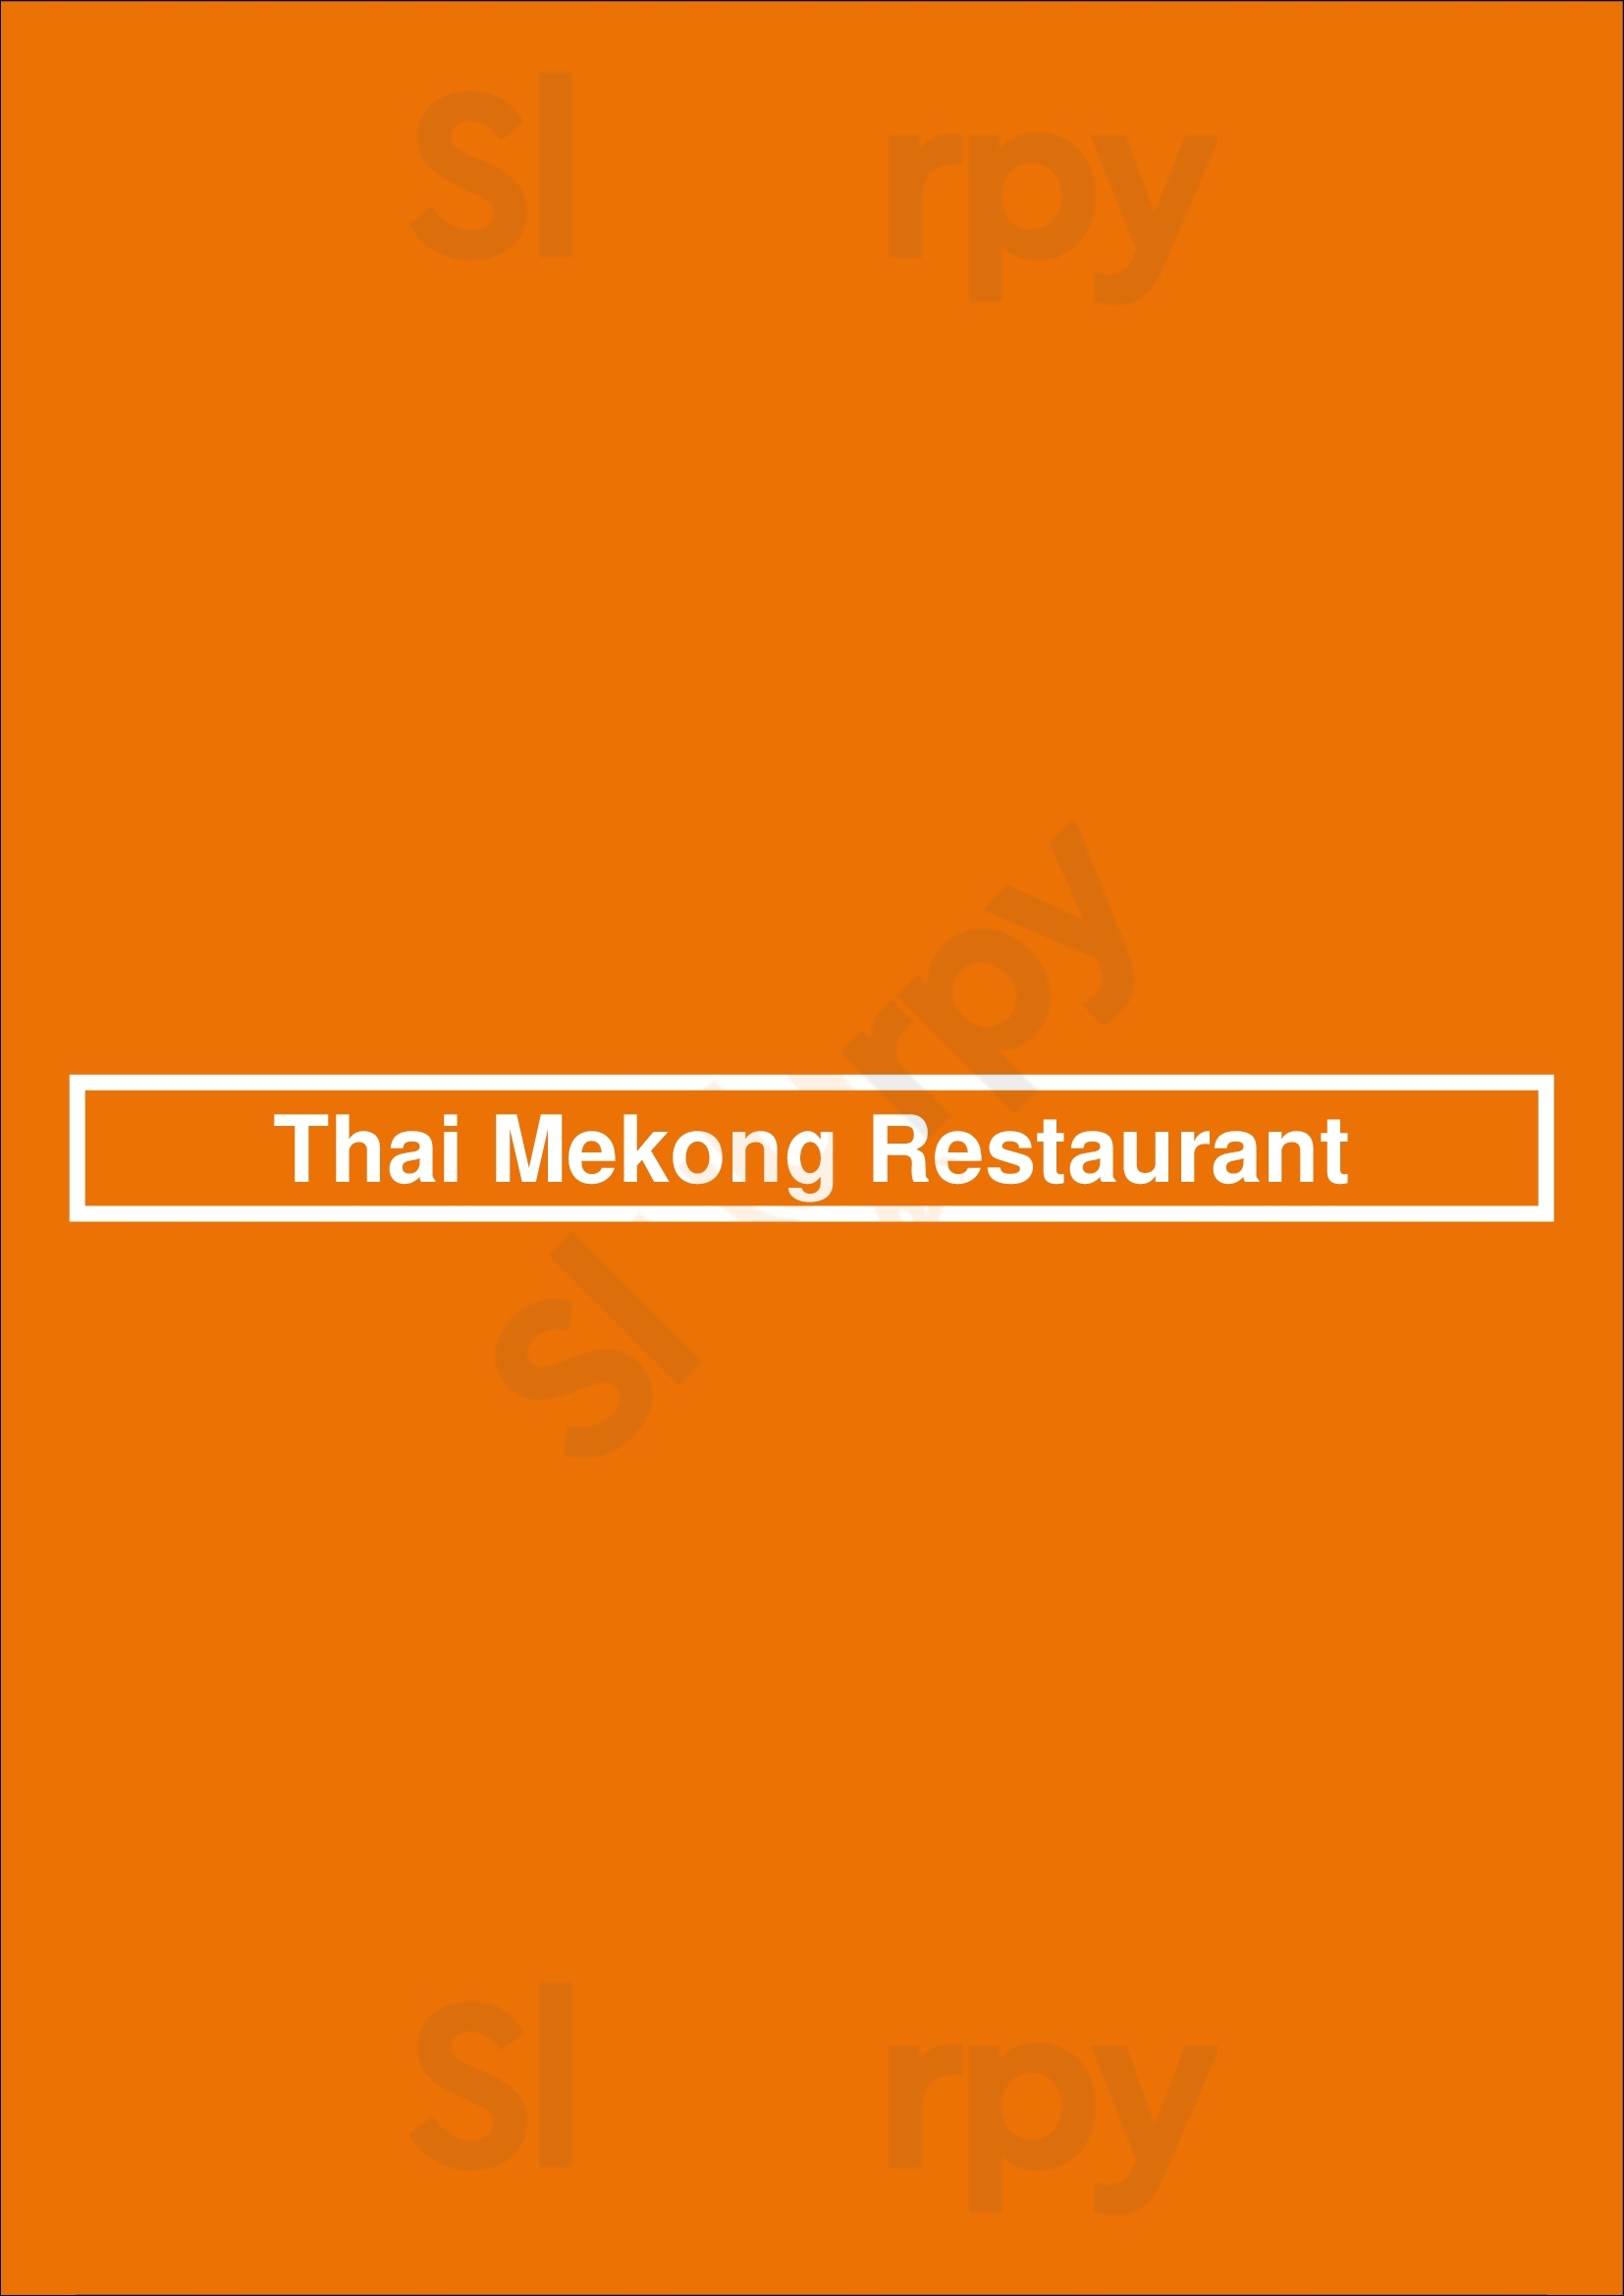 Thai Mekong Restaurant St. Albert Menu - 1